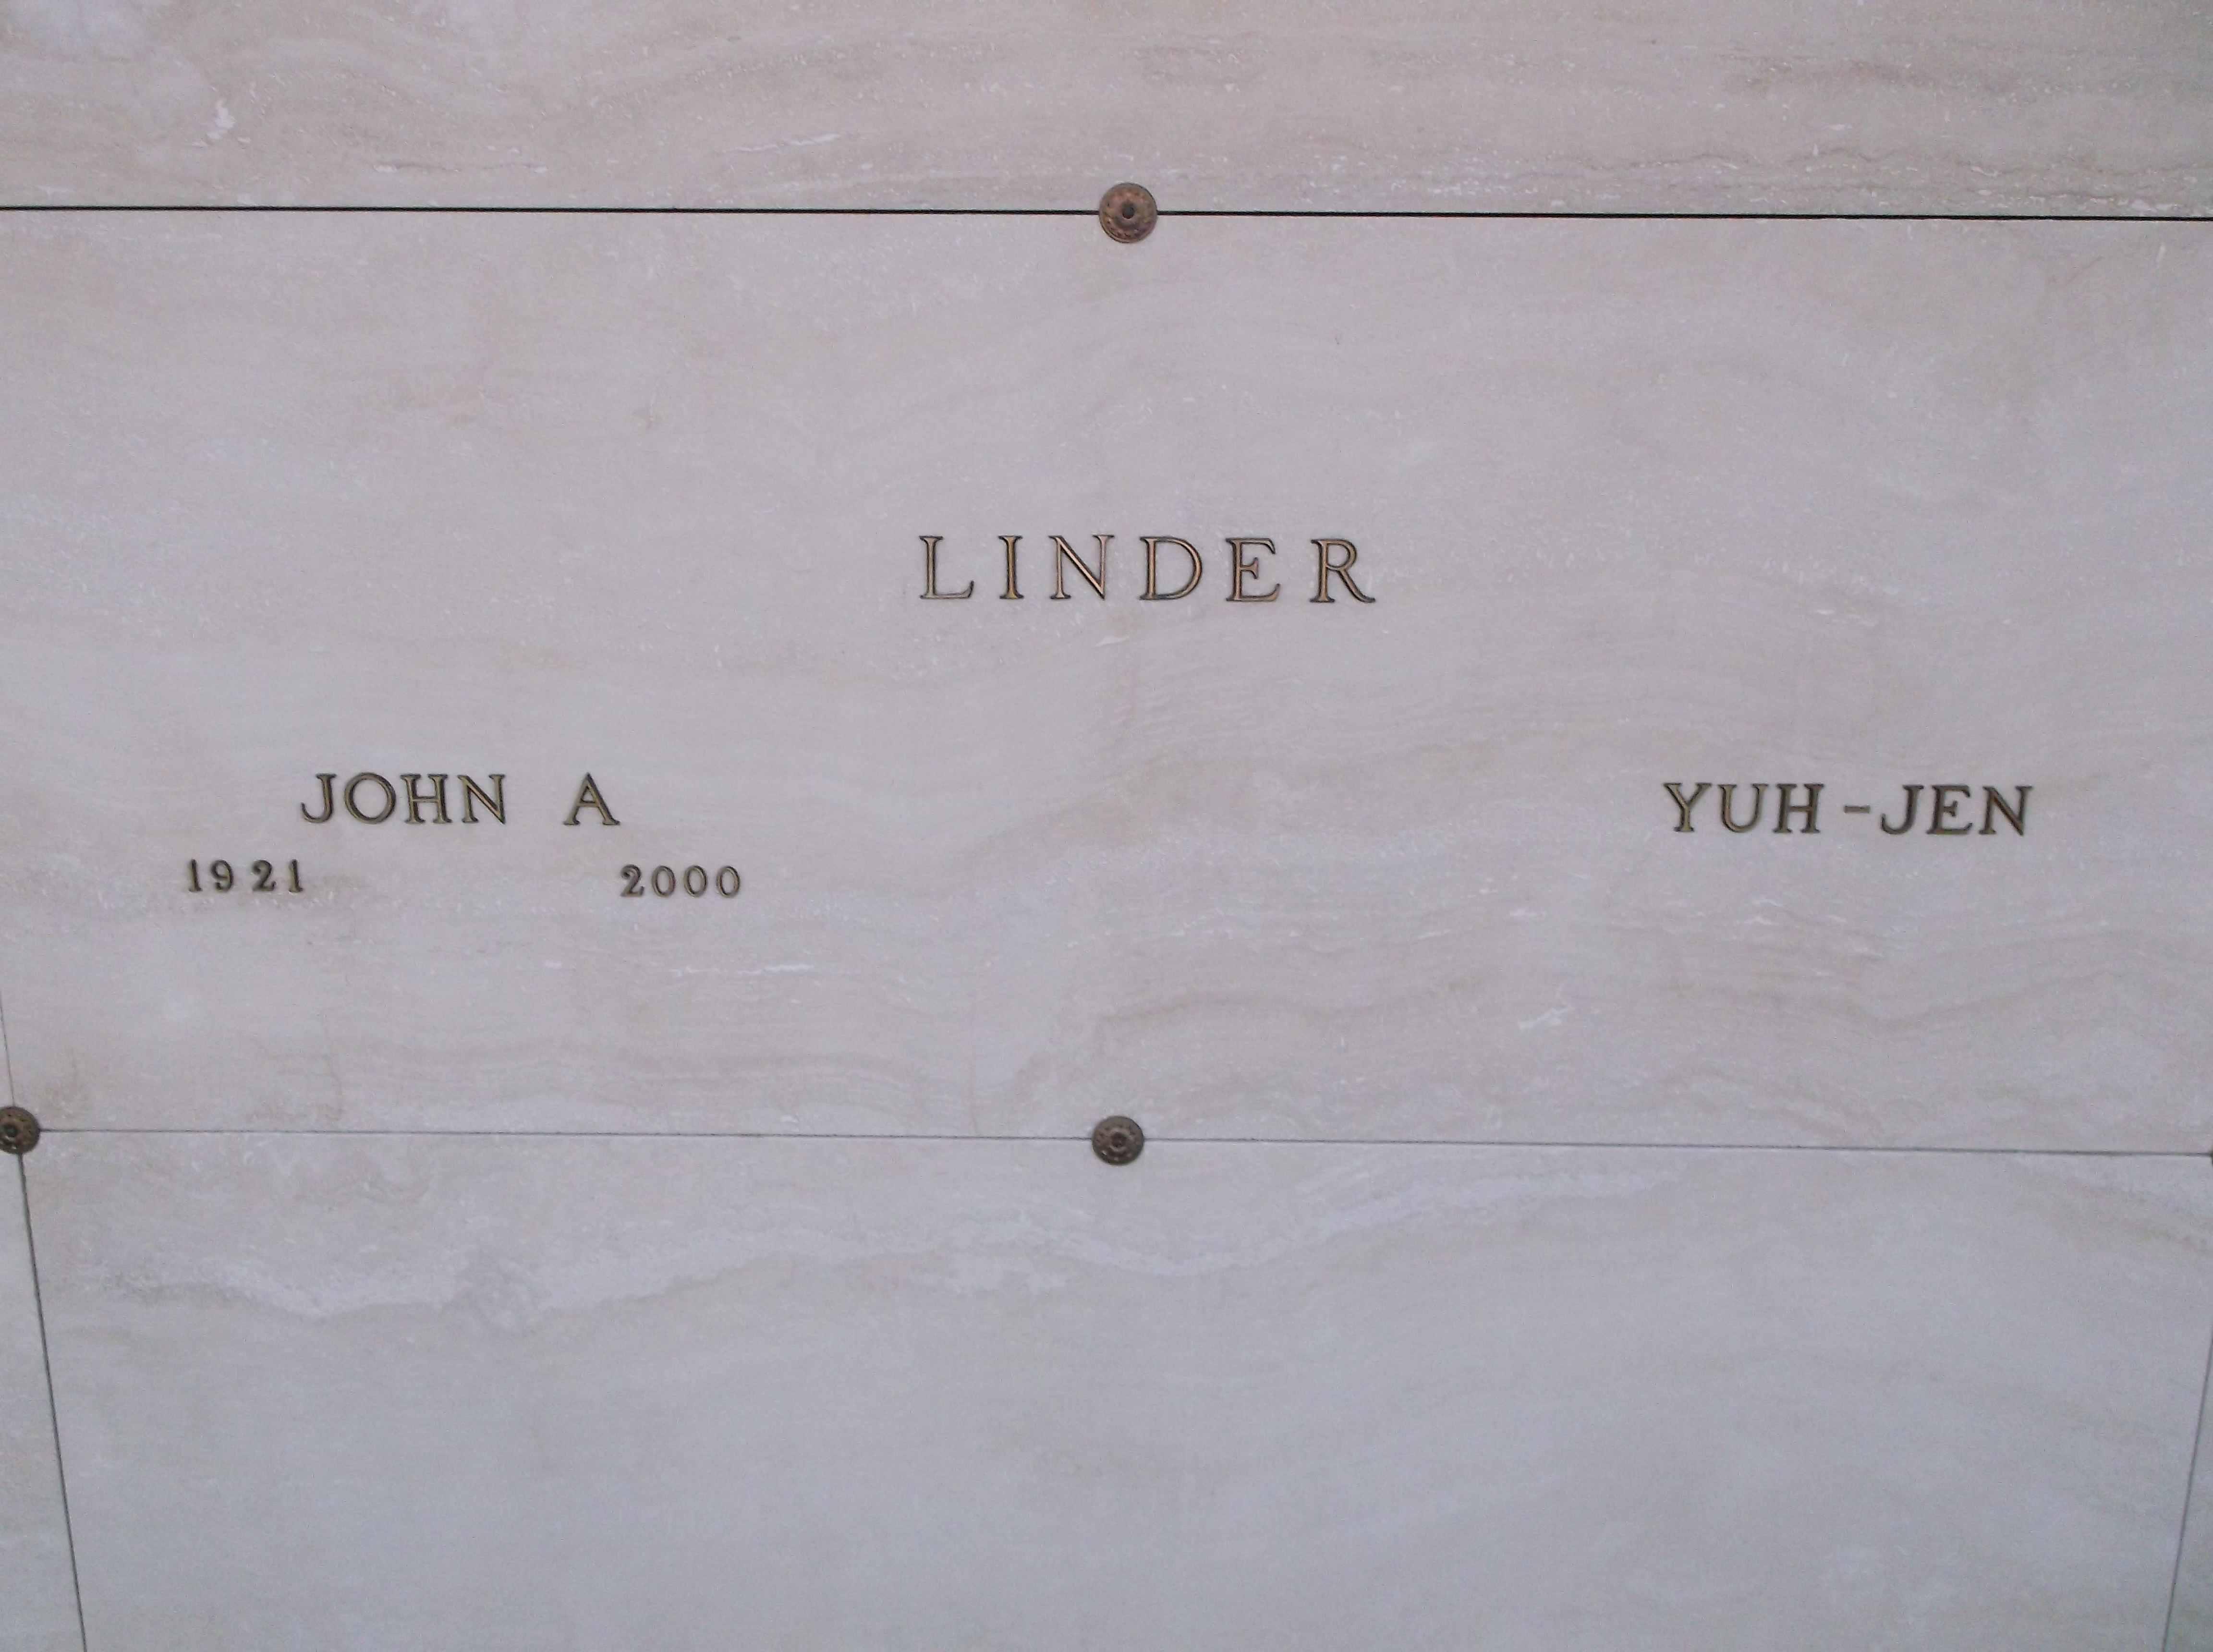 John A Linder